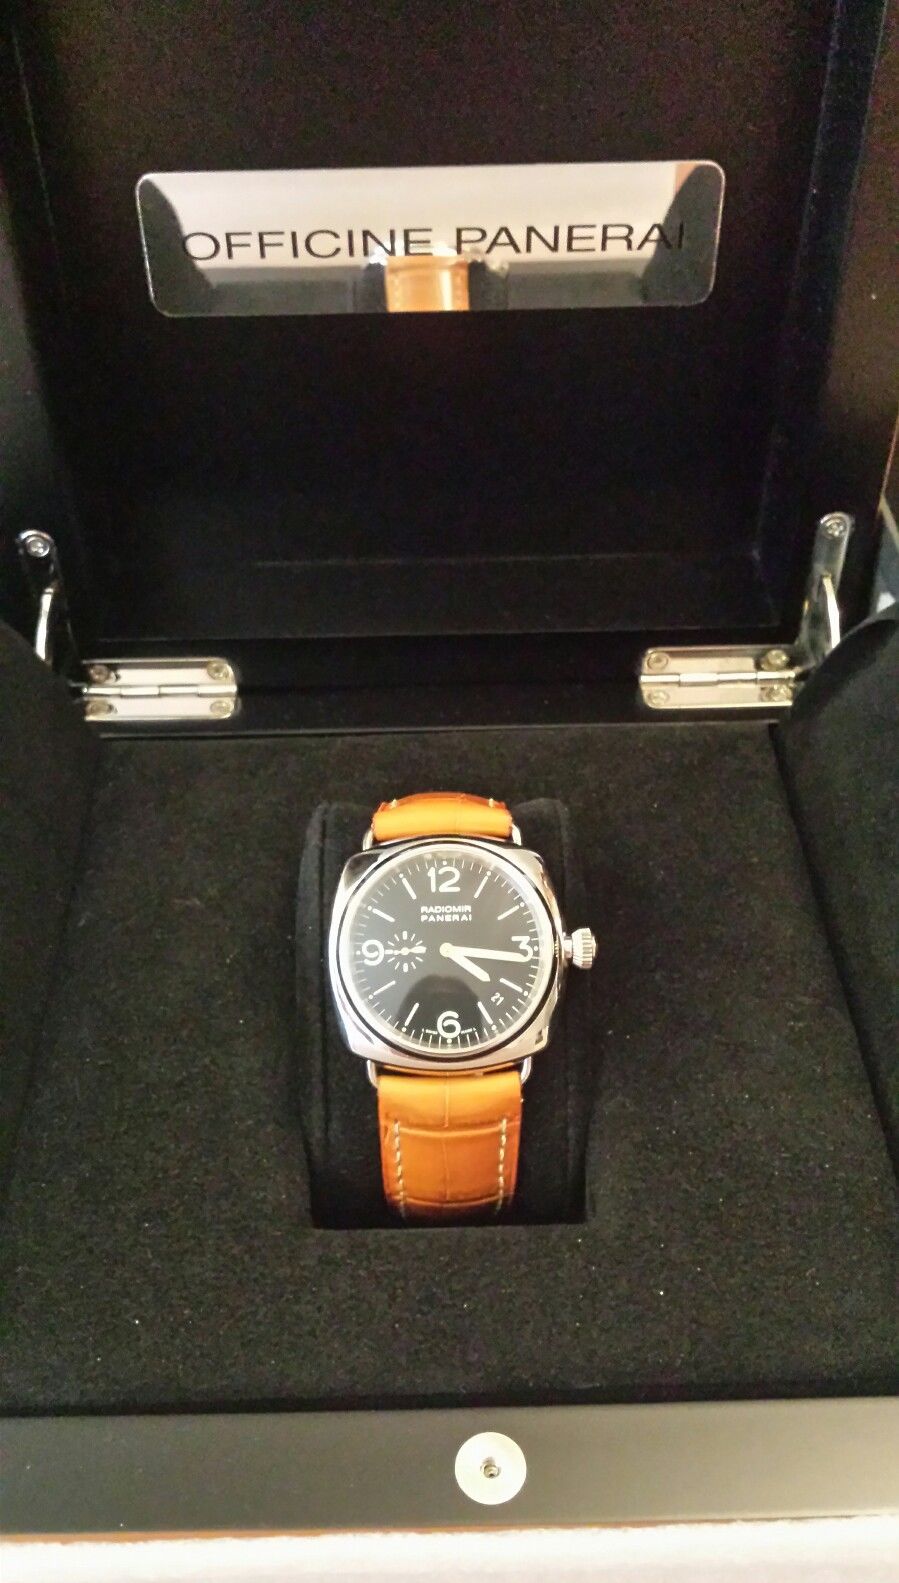 Une sélection de montres Panerai exceptionnelles vendues sur eBay